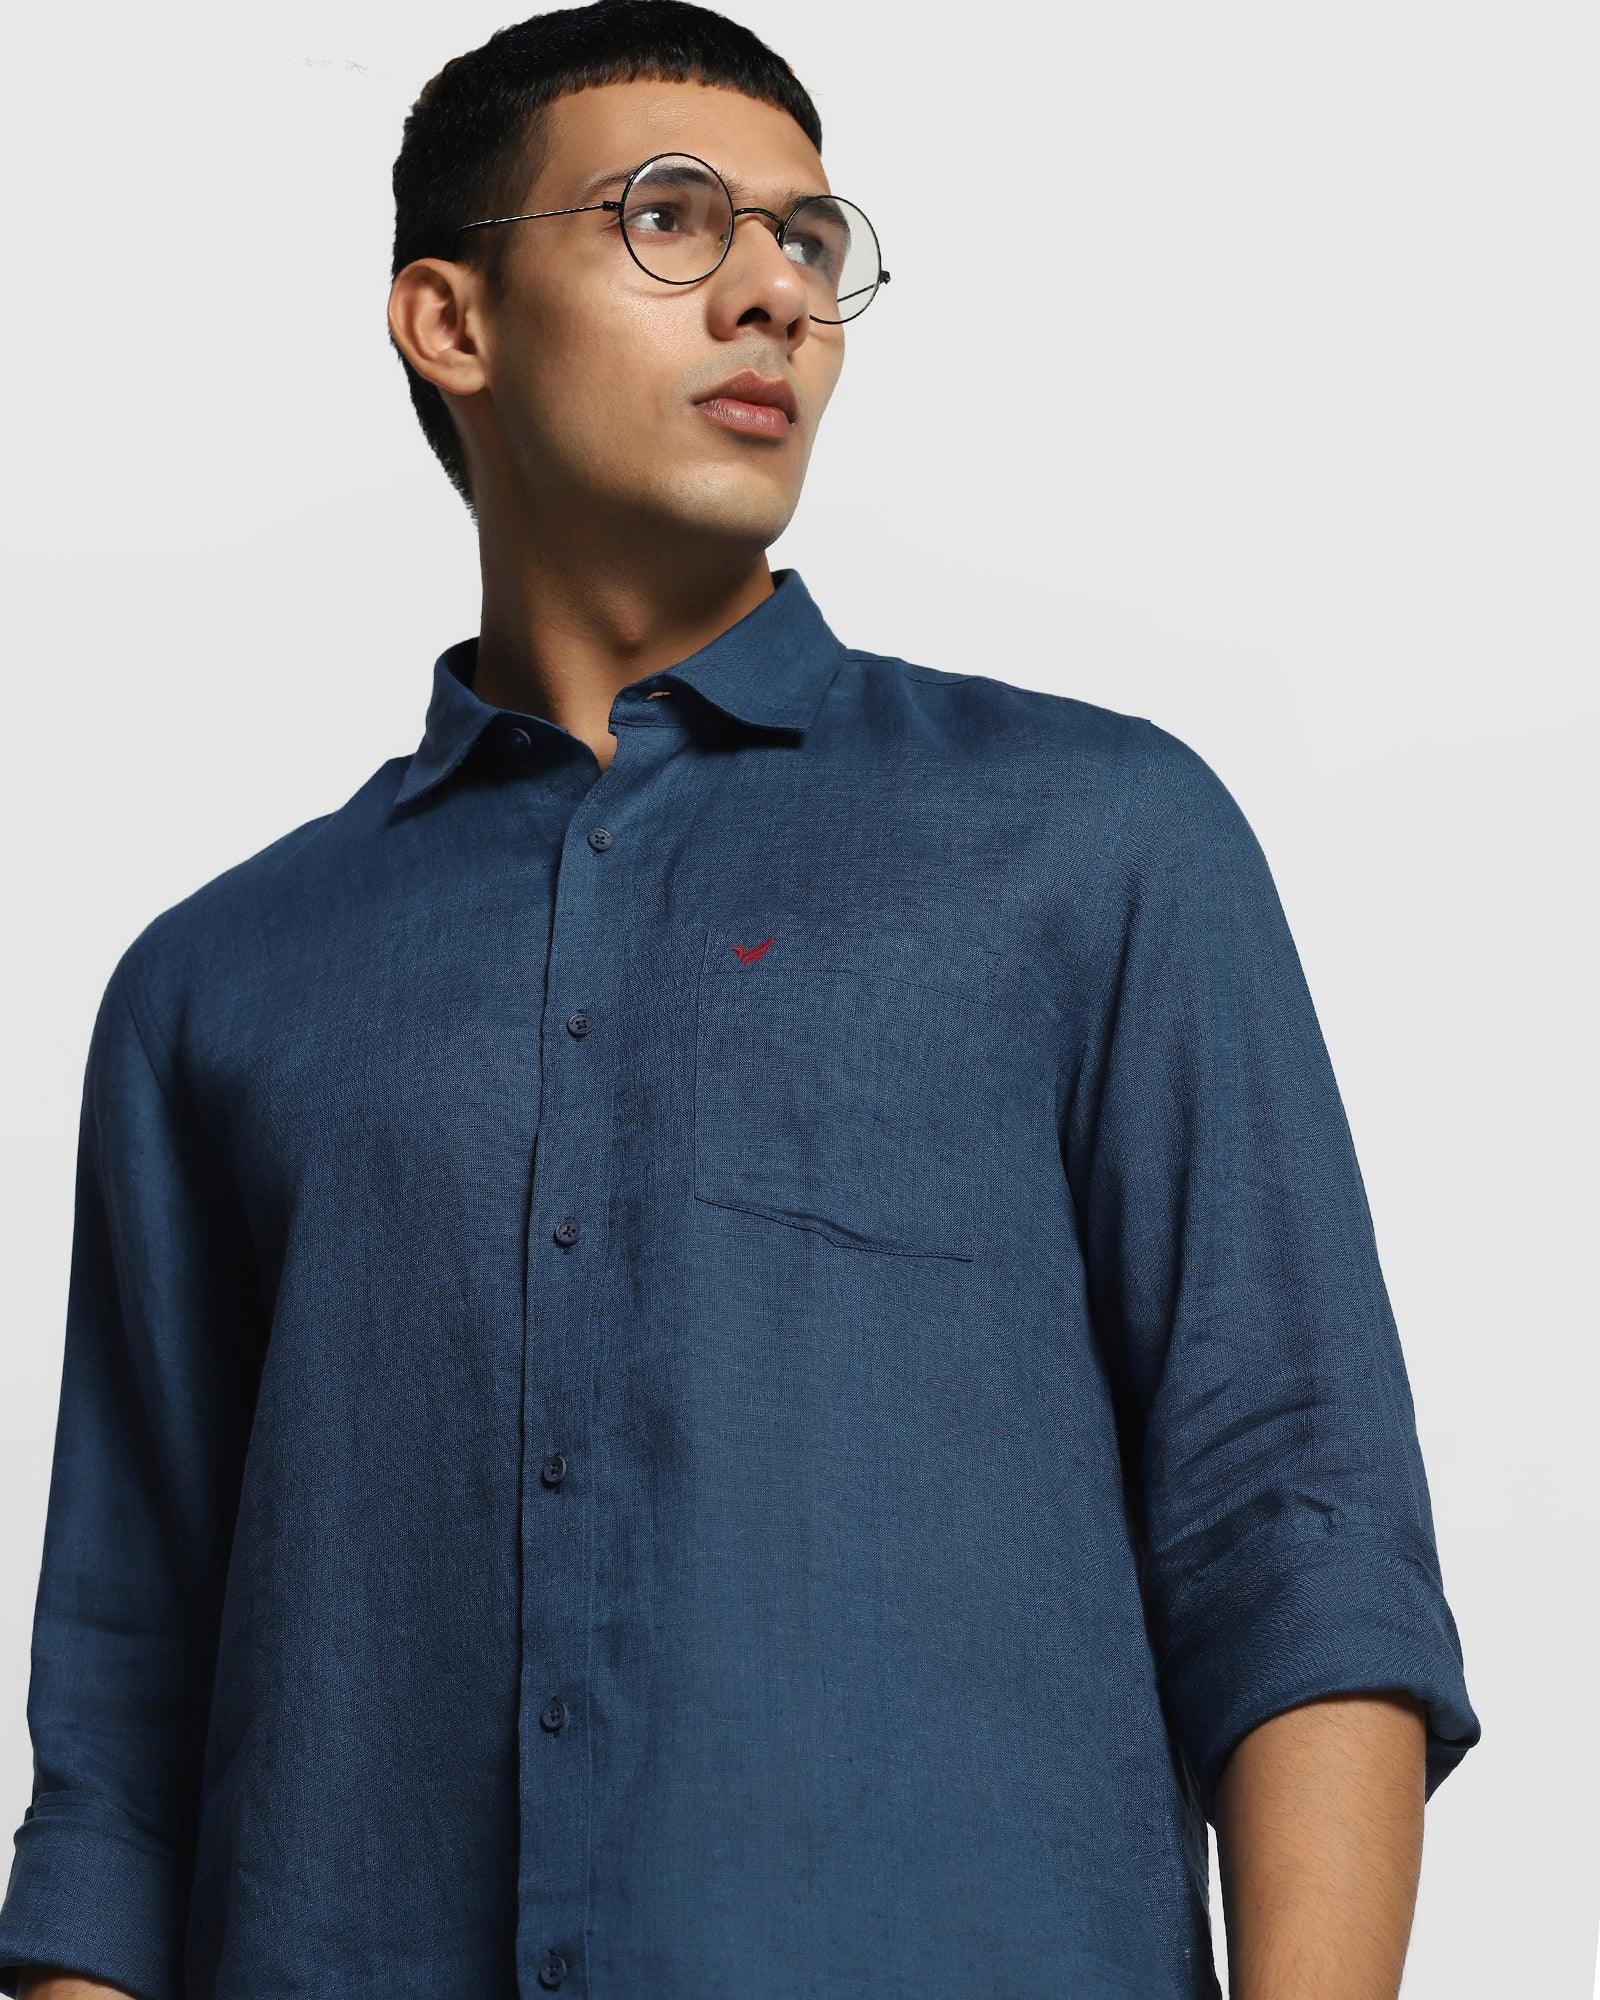 Linen Casual Blue Solid Shirt - Bowen